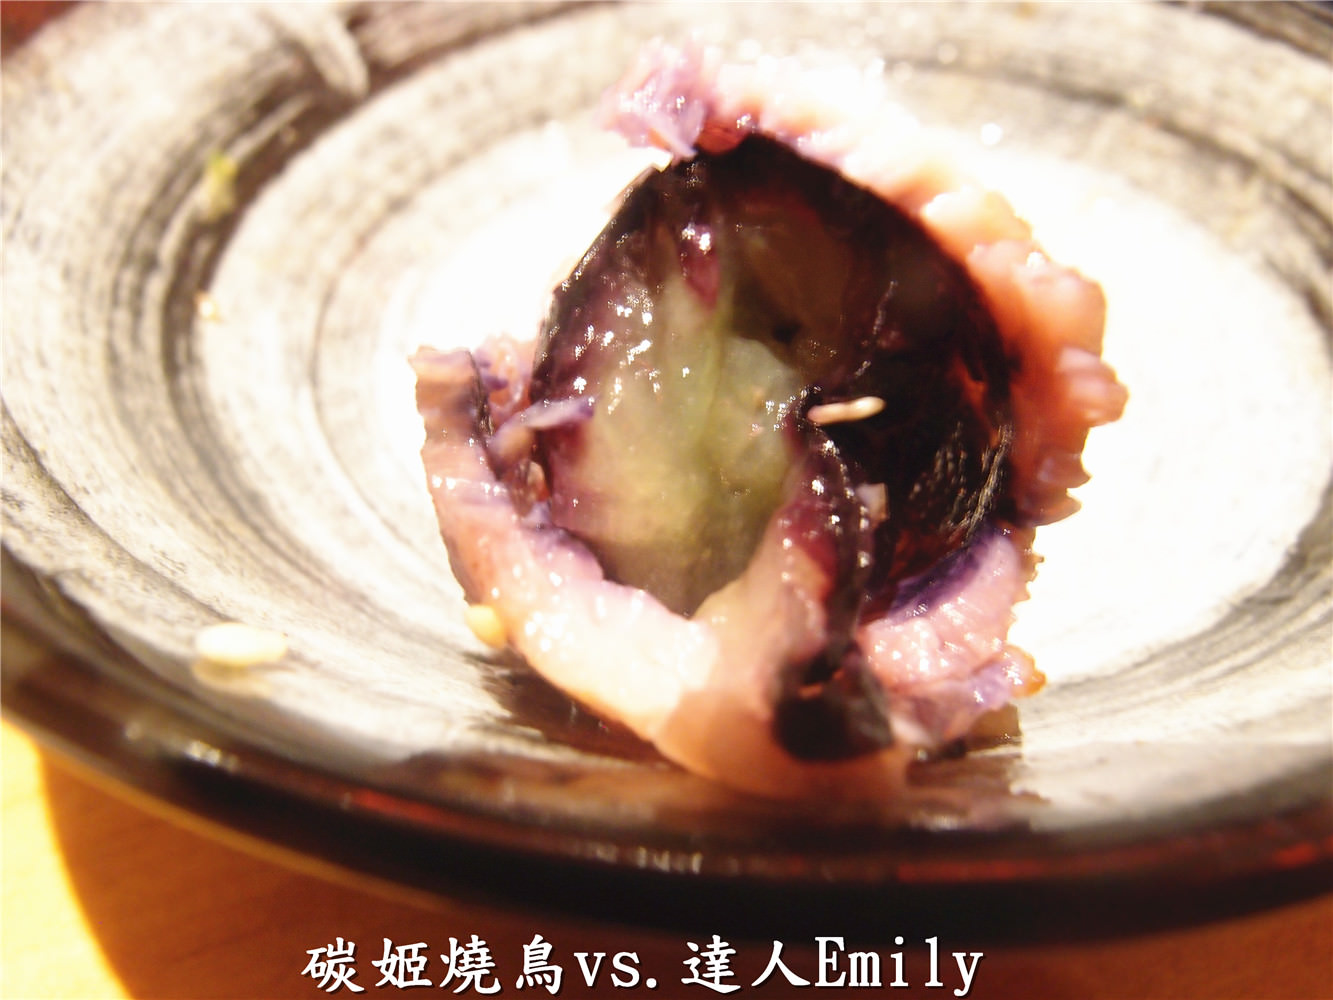 【台中美食】碳姬燒鳥~XL等級的超大生蠔,還有培根葡萄和雞蛋冰喔!